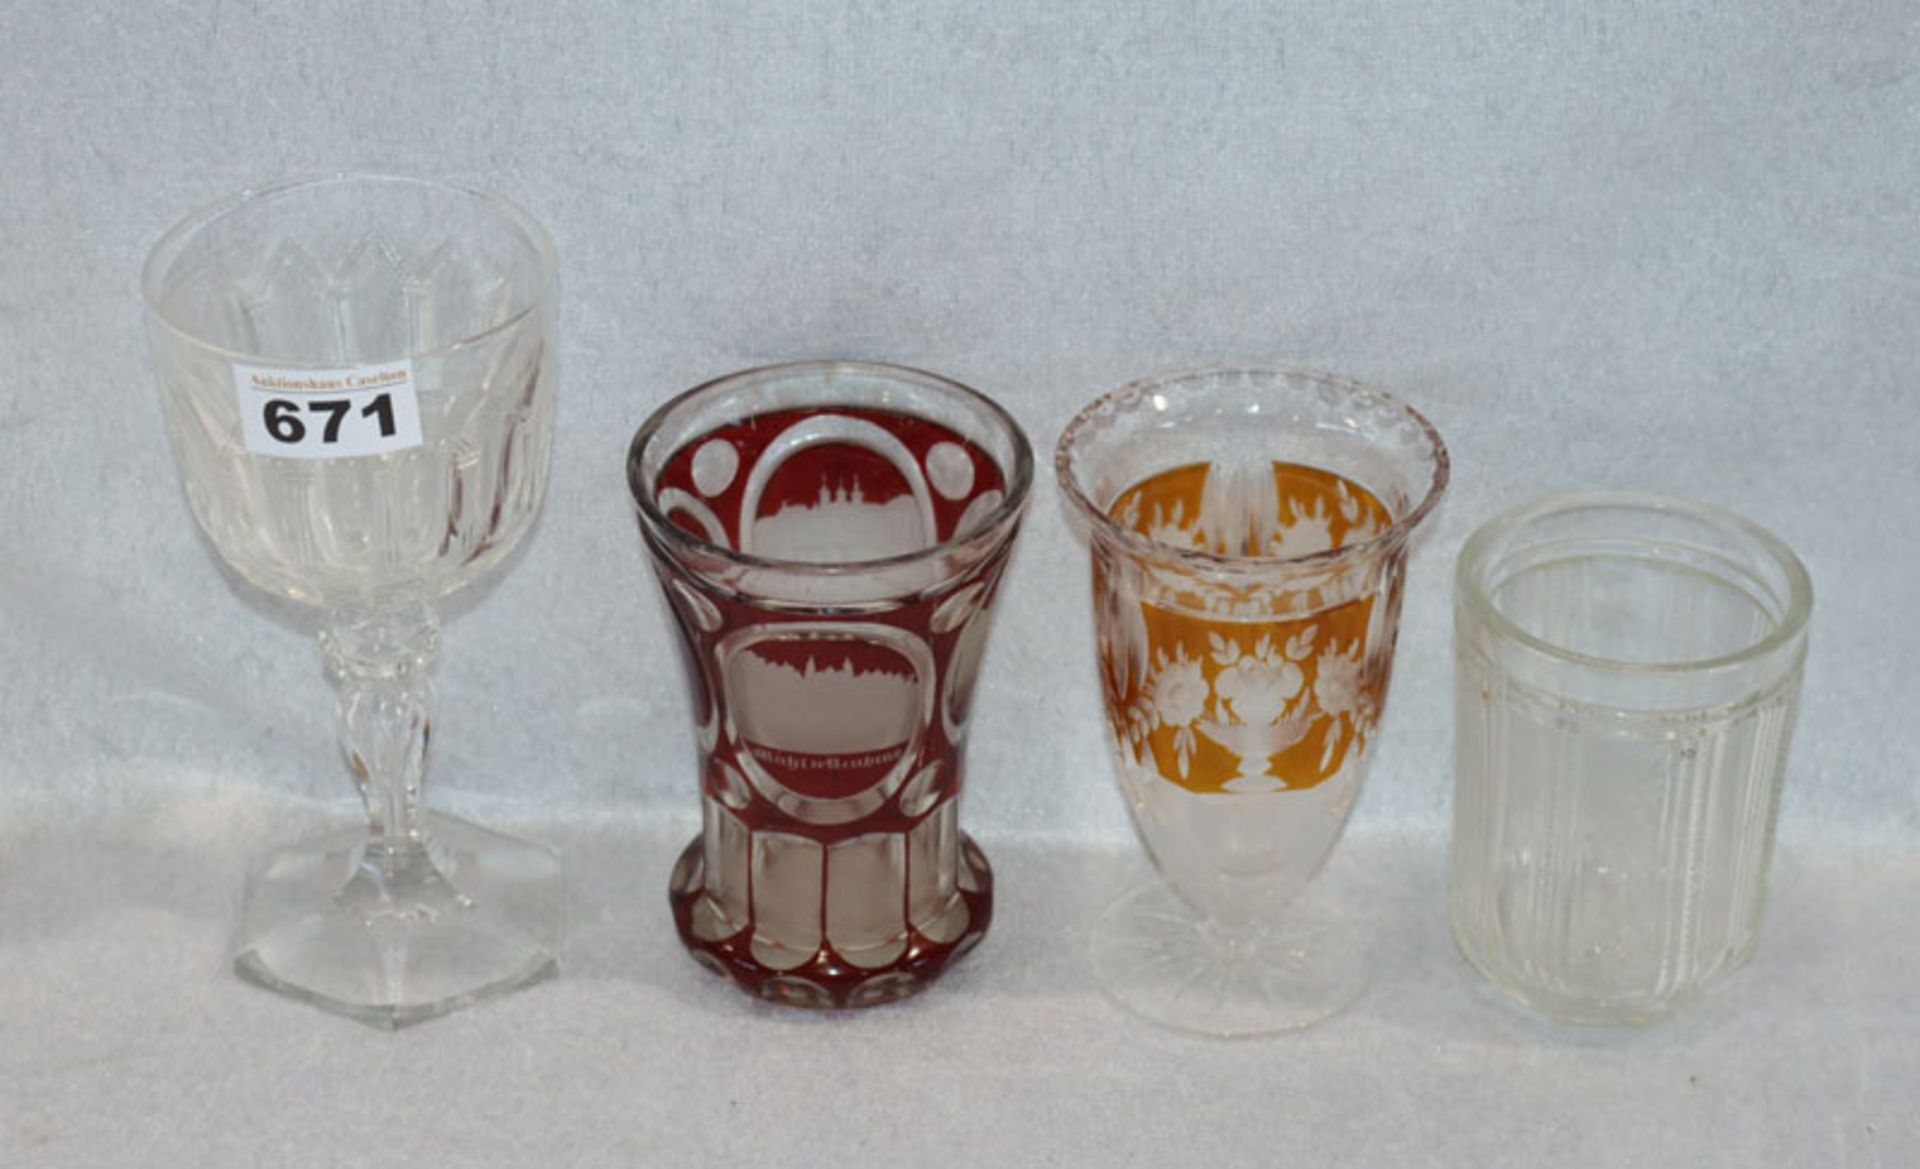 Glas-Konvolut, meist 19. Jahrhundert, 4 Gläser in verschiedenen Formen, teils geschliffen, teils